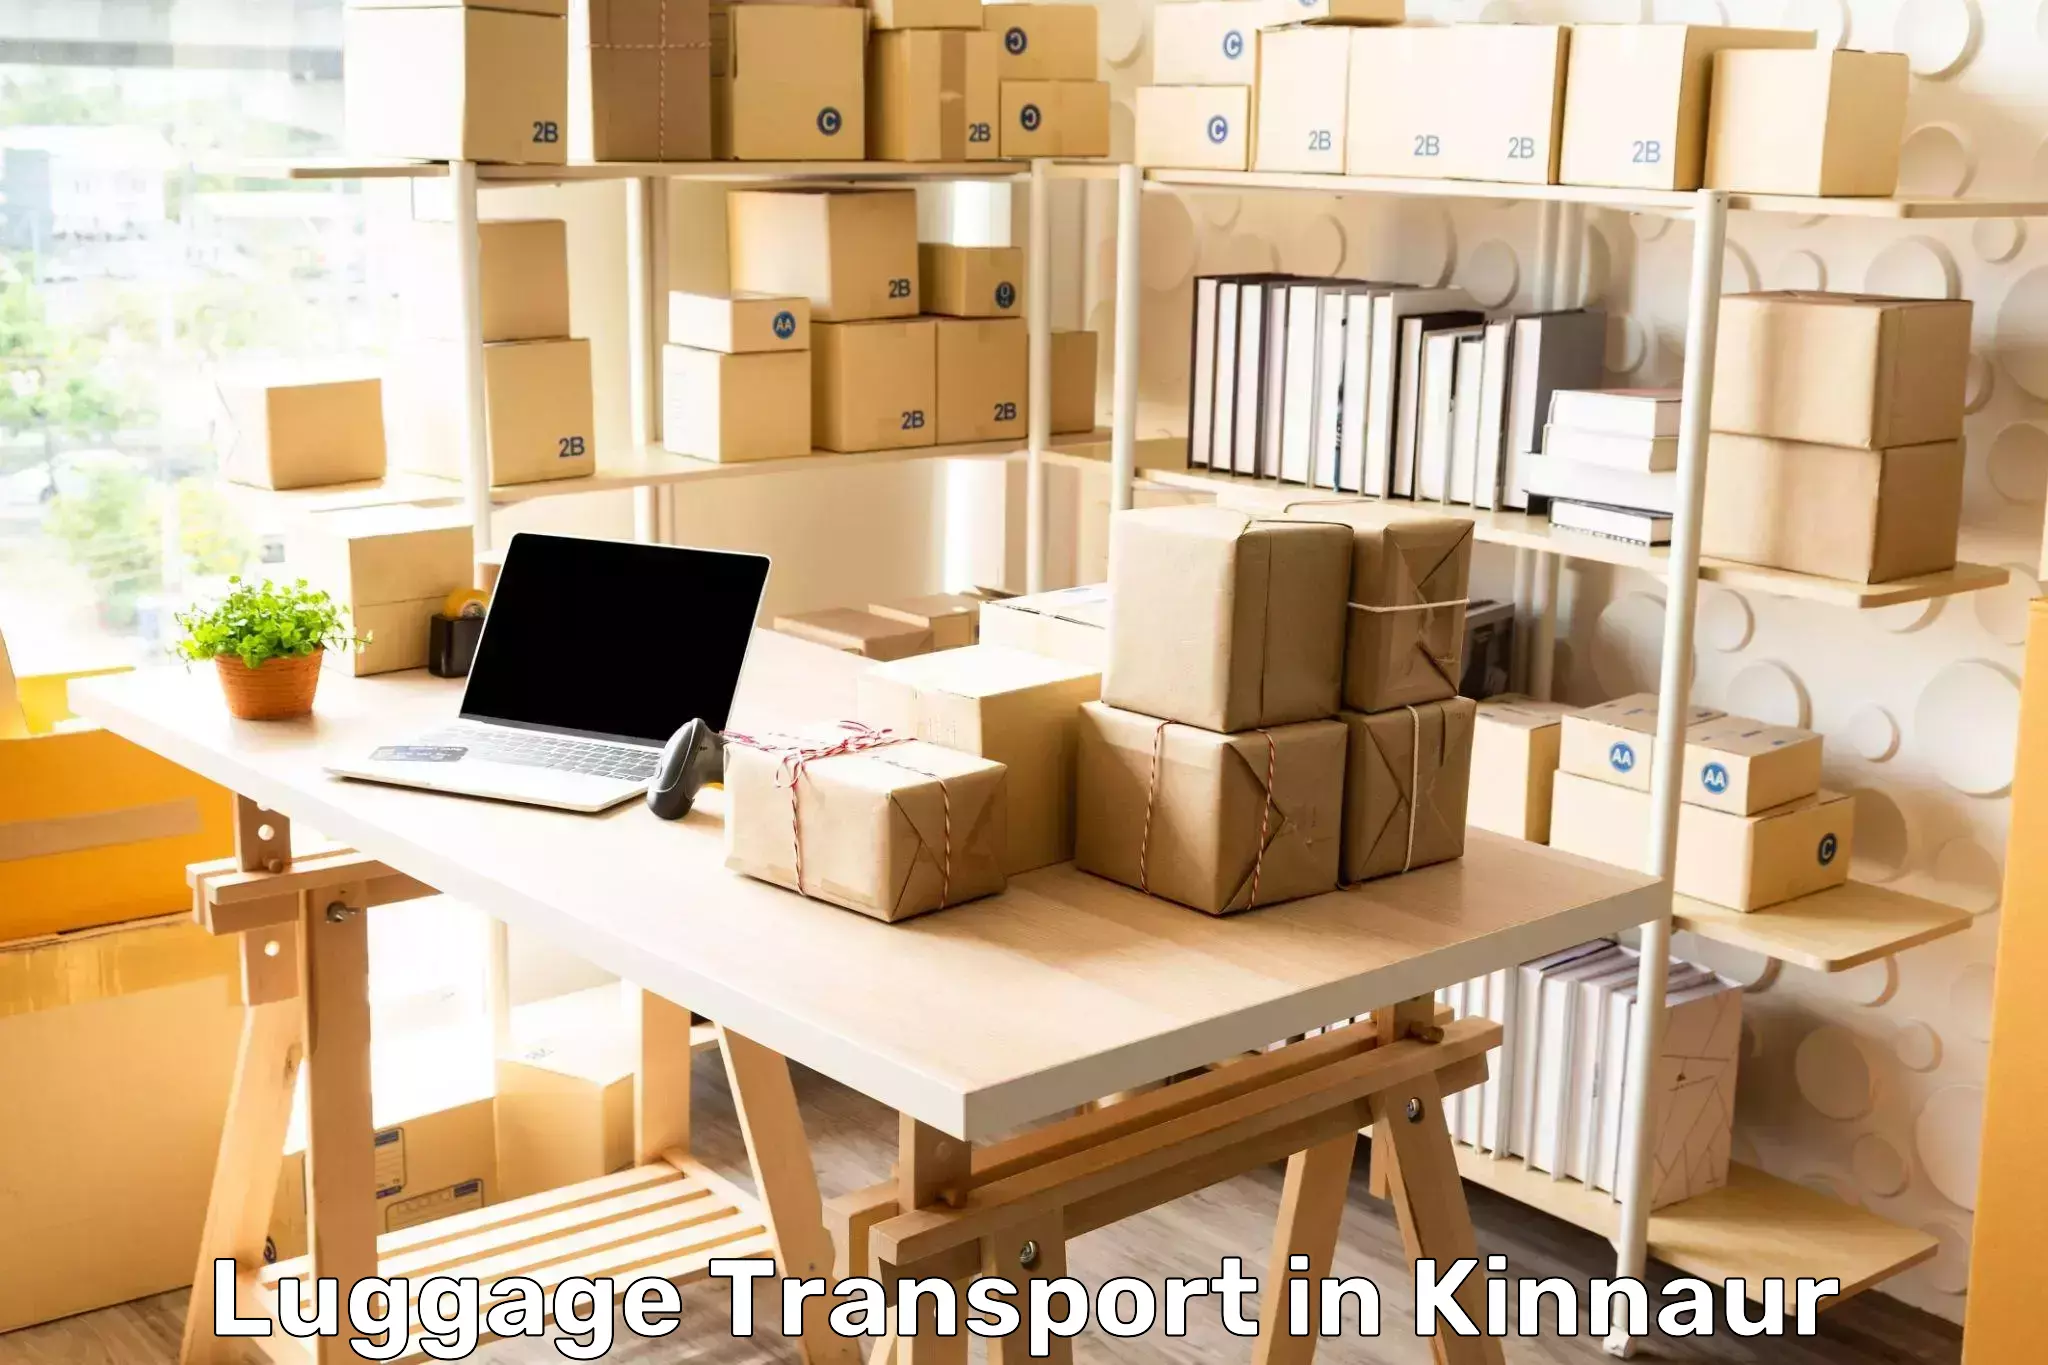 Luggage forwarding service in Kinnaur